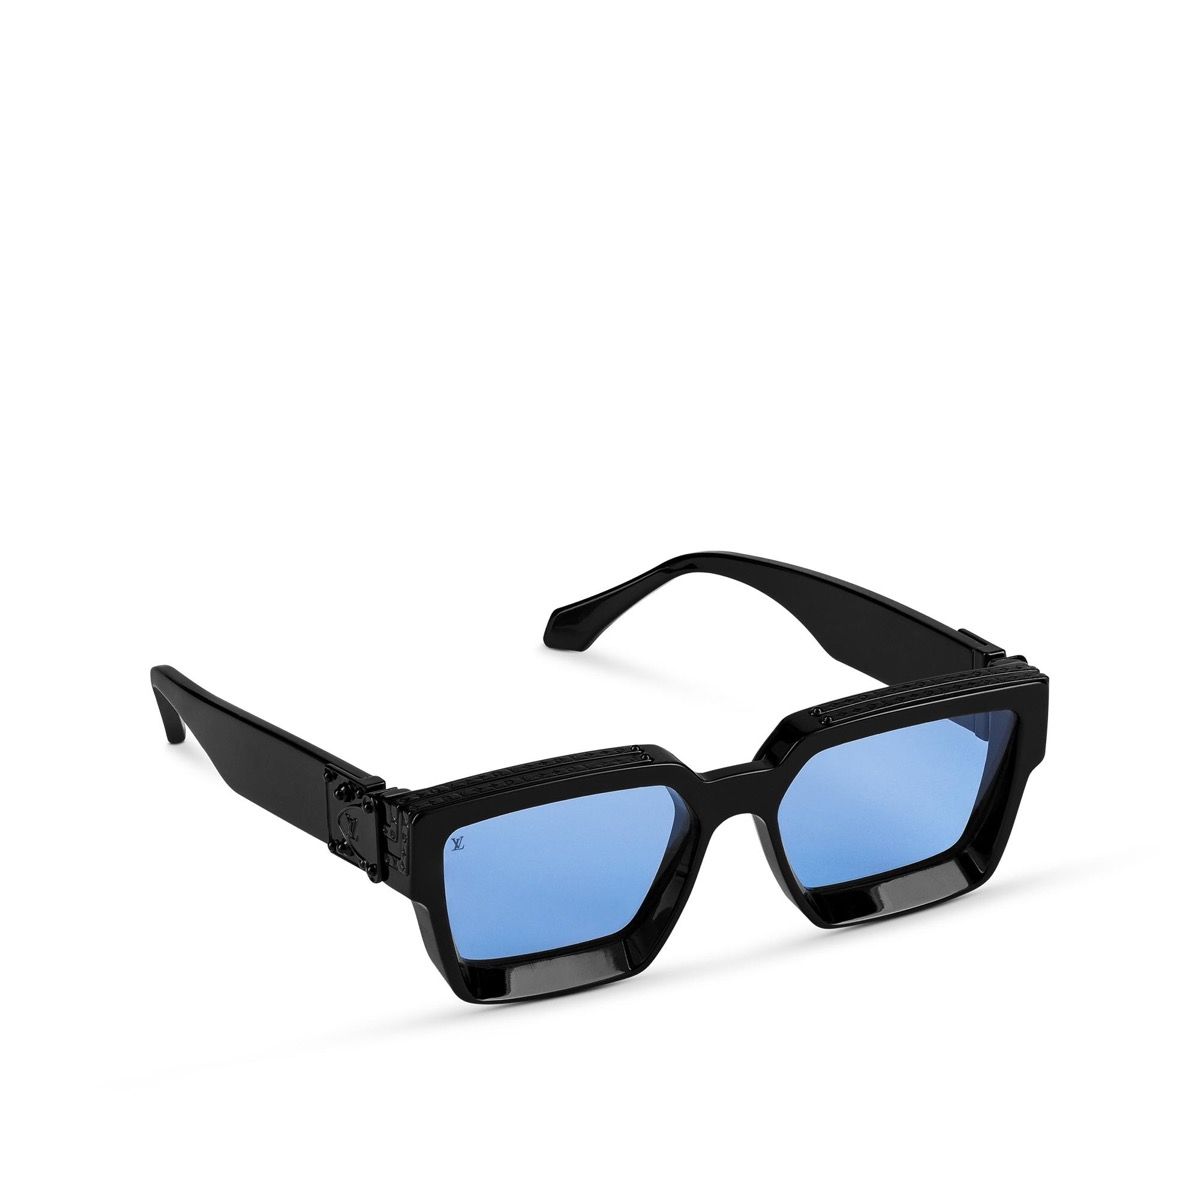 LOUIS VUITTON 1.1 Millionaire Sunglasses - Z1165E $120.00 - PicClick